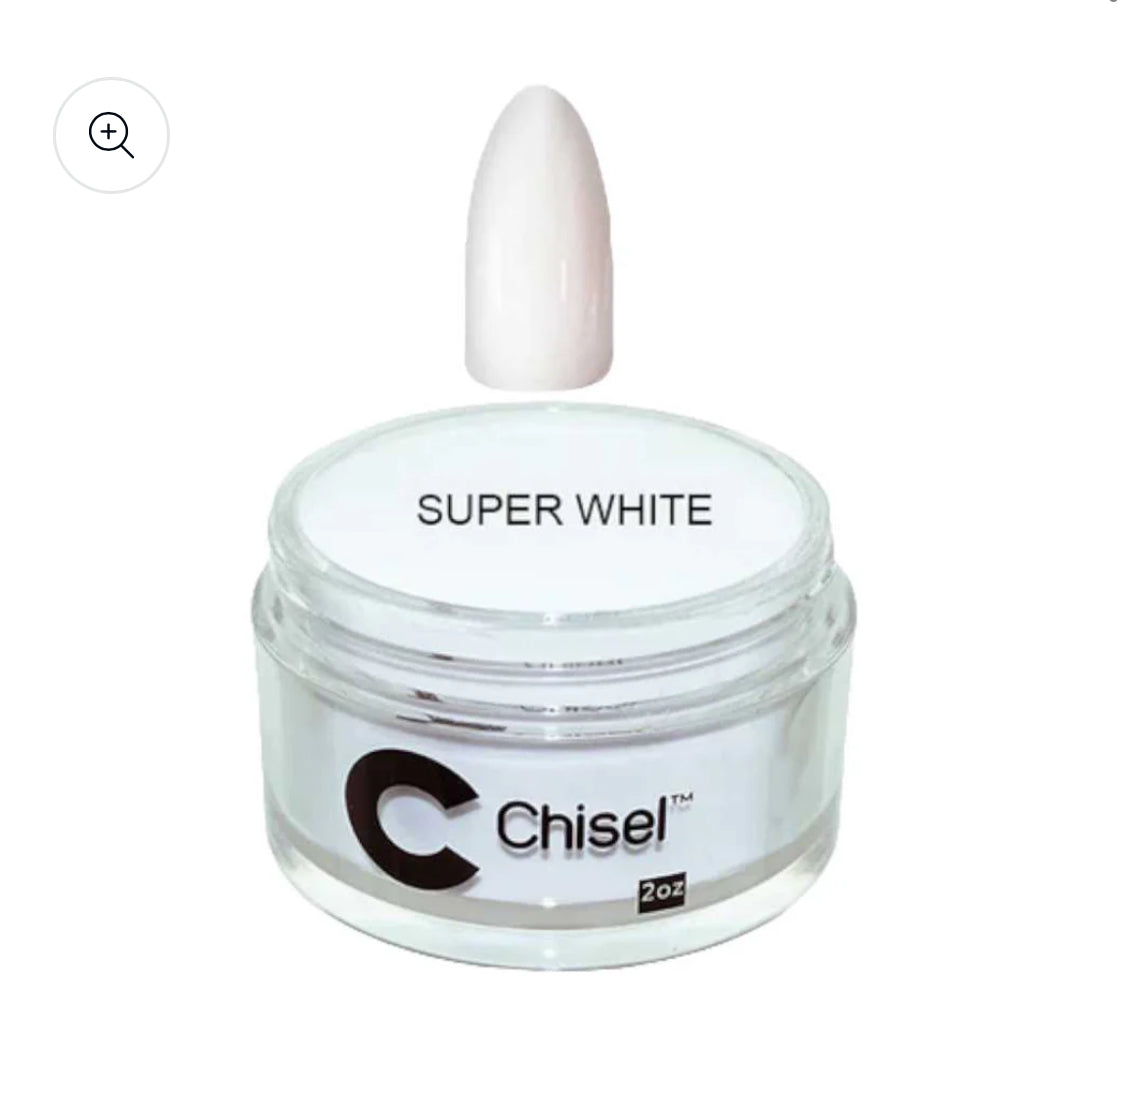 Chisel Super White Powder 2 oz